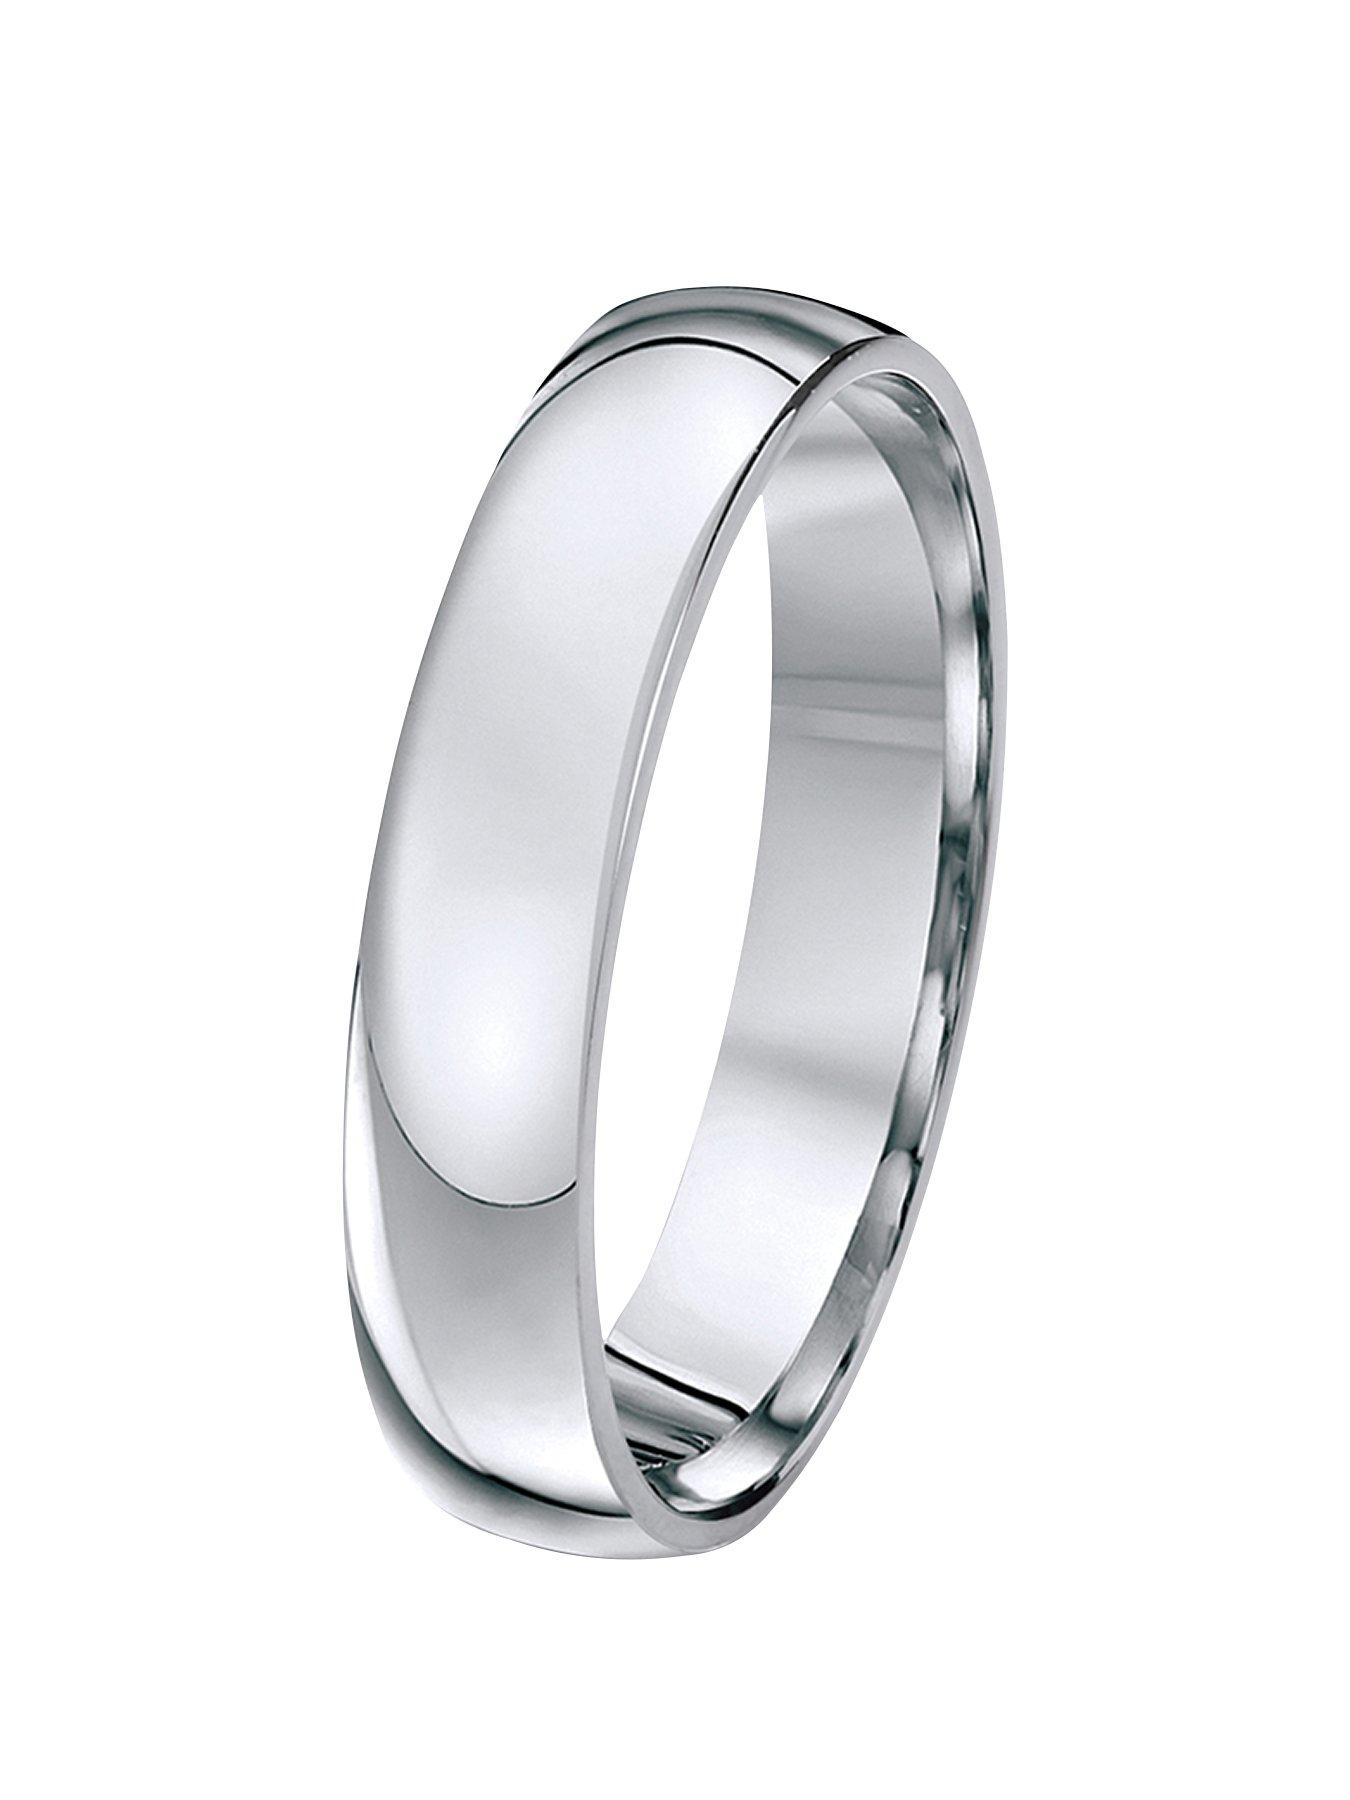 Men's Wedding Rings, Custom-Made Handmade Gentlemen's Rings in the UK